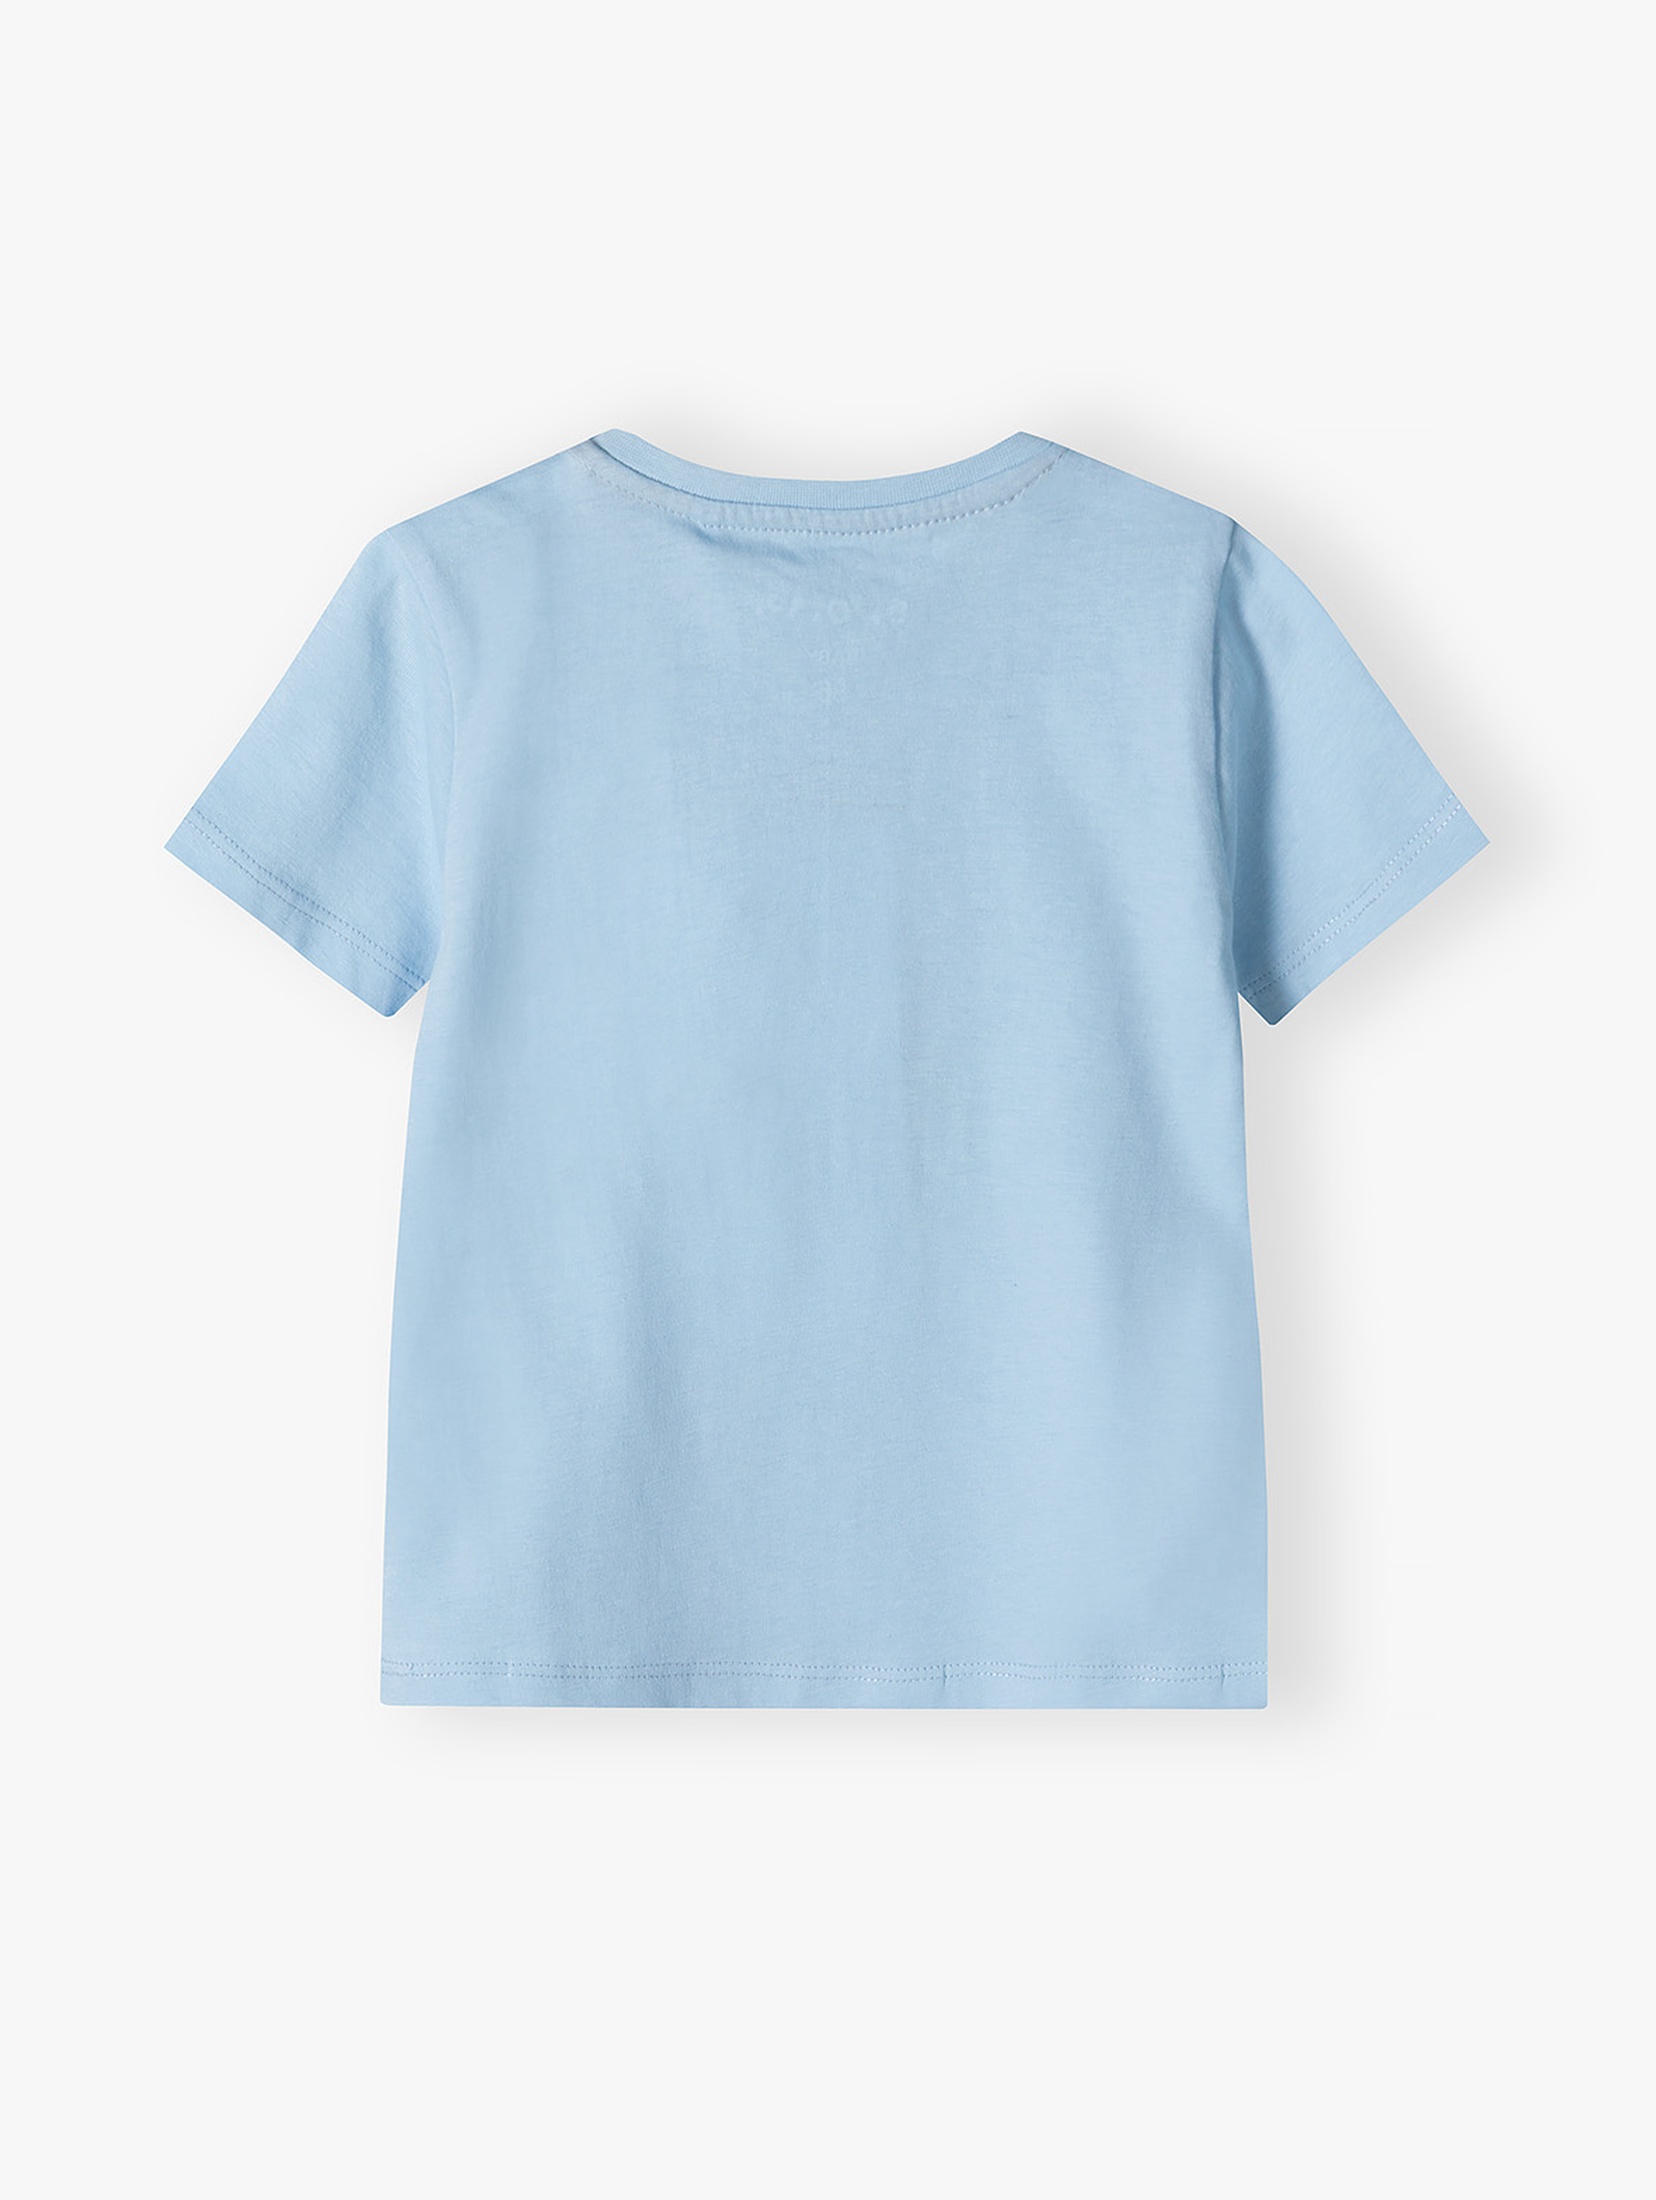 Niebieski bawełniany t-shirt niemowlęcy - wakacyjne nadruki